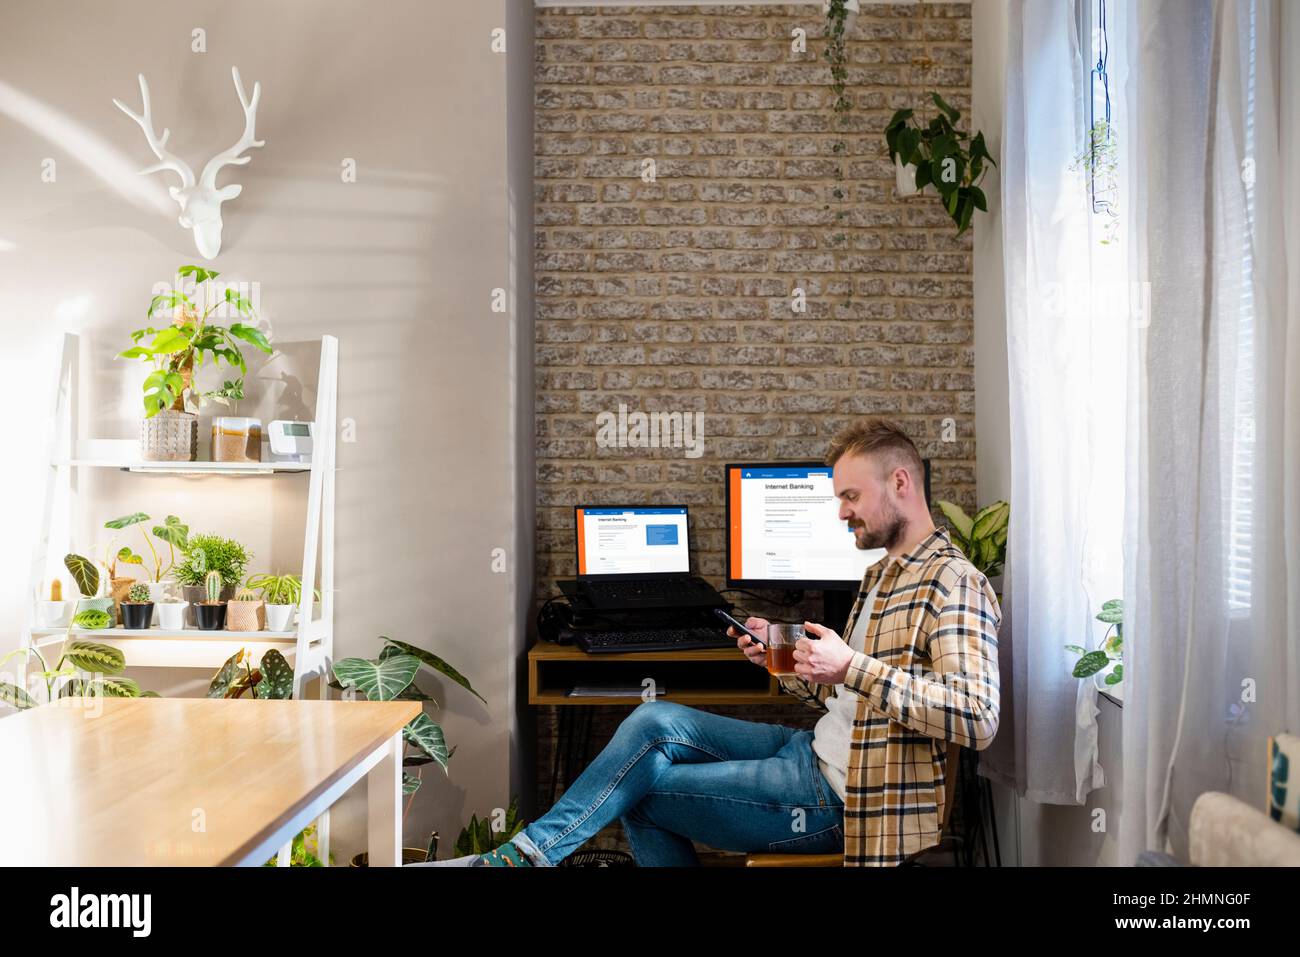 Une photo d'un bureau à domicile avec deux moniteurs, banque sur Internet, est affichée sur les écrans. Un homme s'assoit avec son téléphone près de son bureau. Banque D'Images